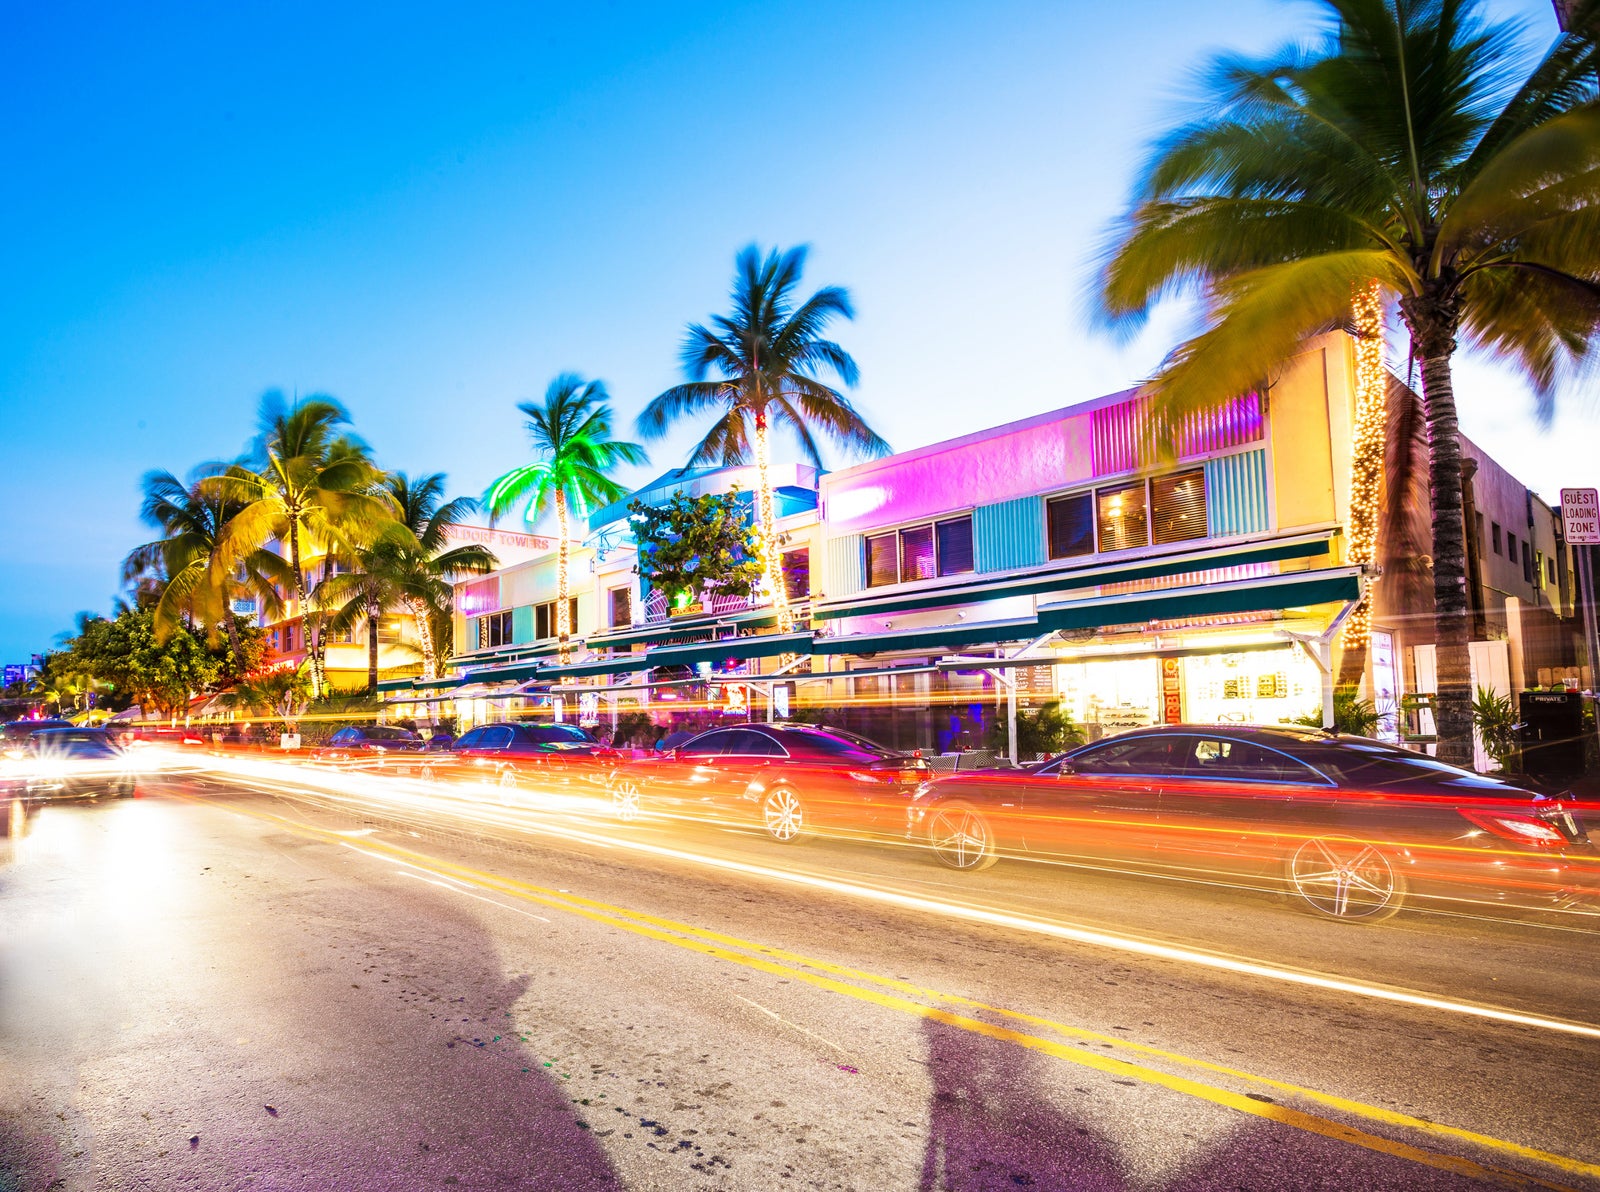 Ocean Drive scene at South Beach, Miami, USA.